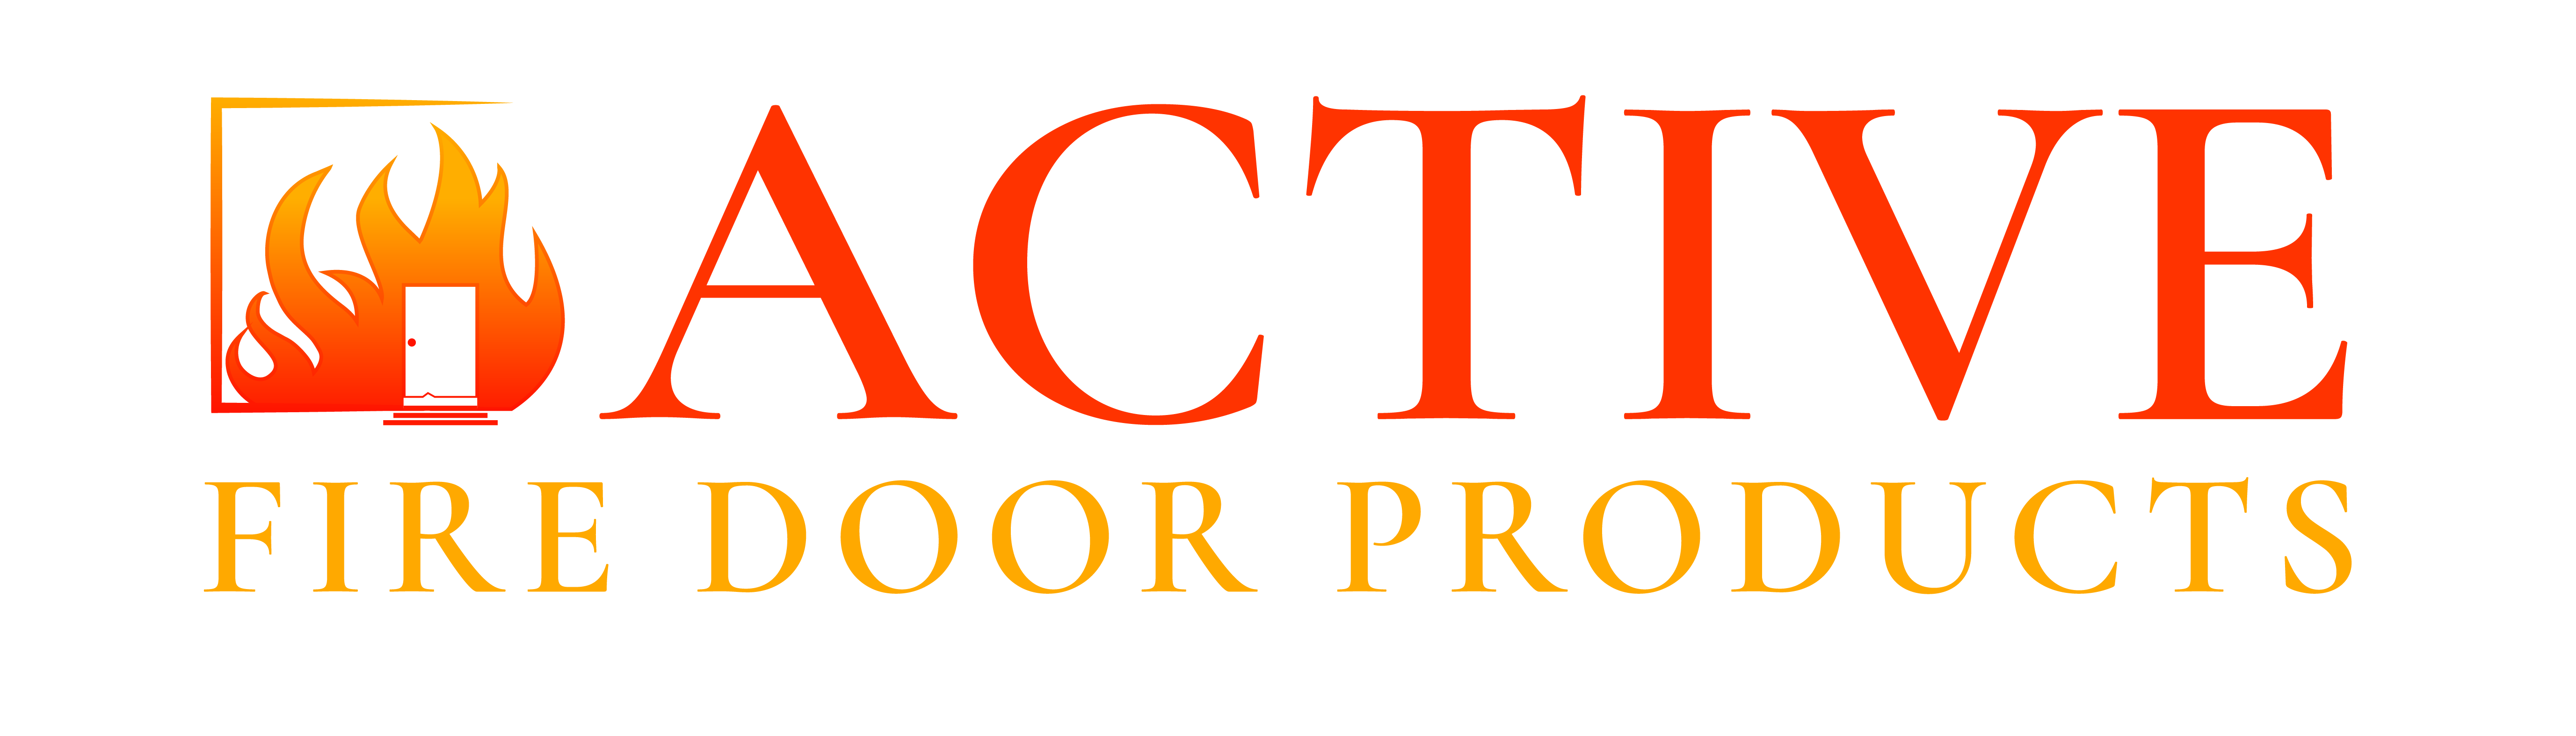 Active Fire Door Products